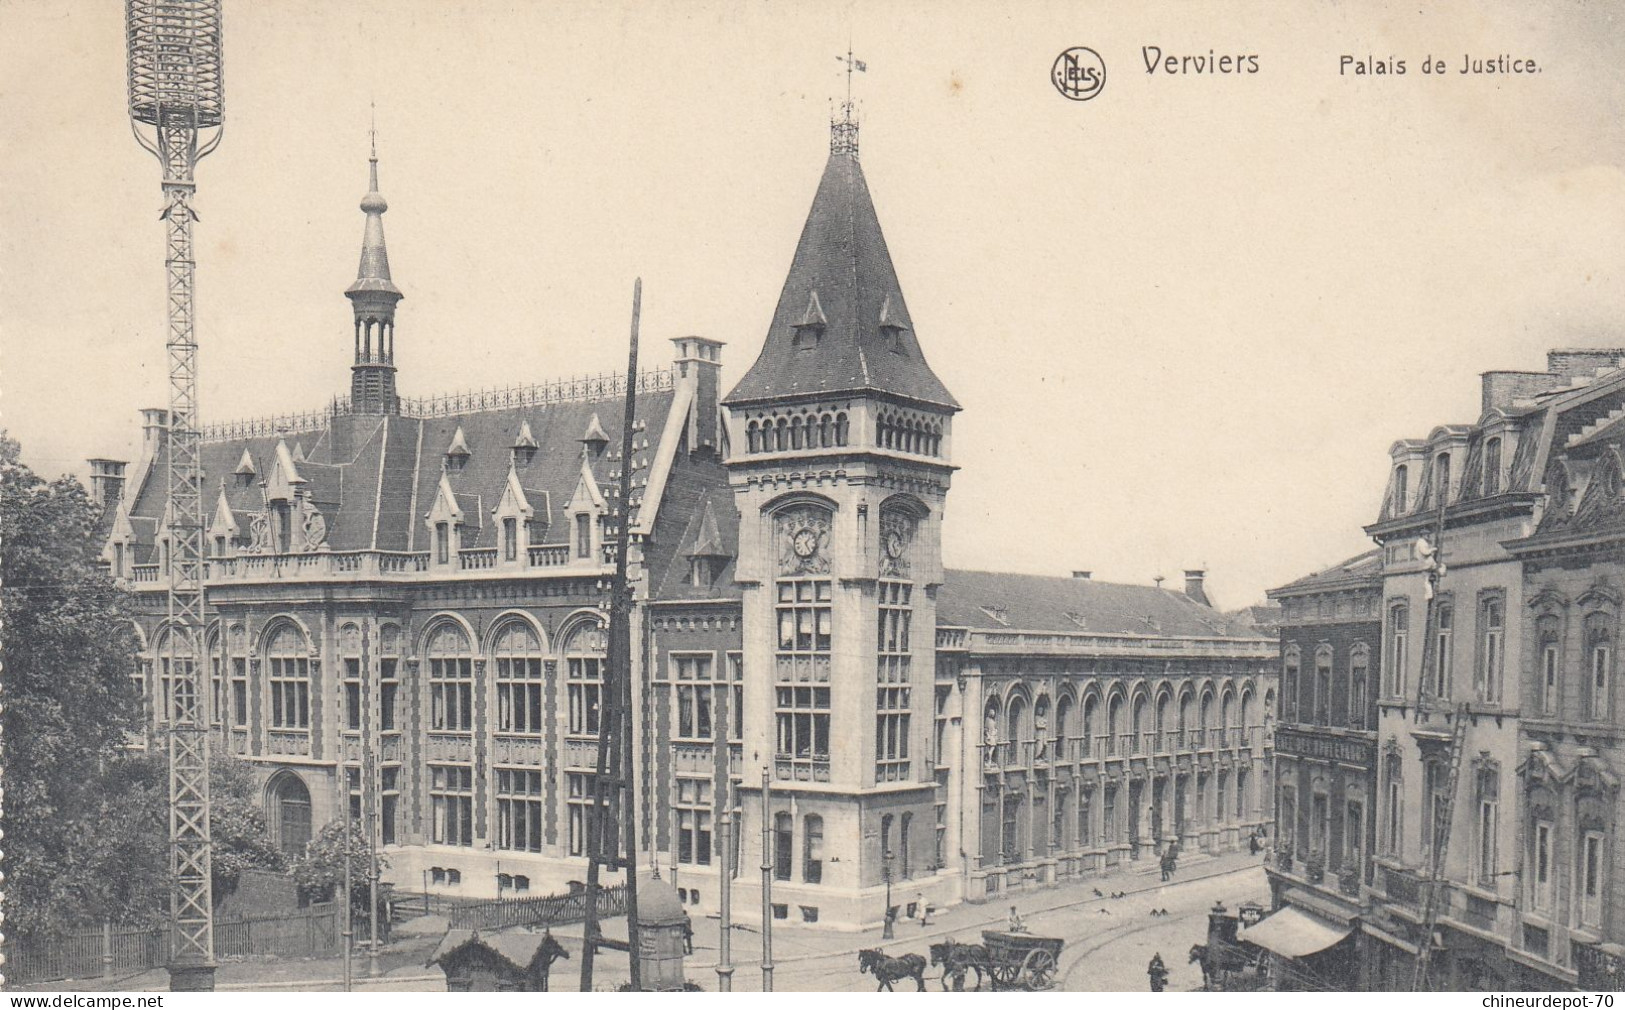 VERVIERS PALAIS DE JUSTICE - Verviers